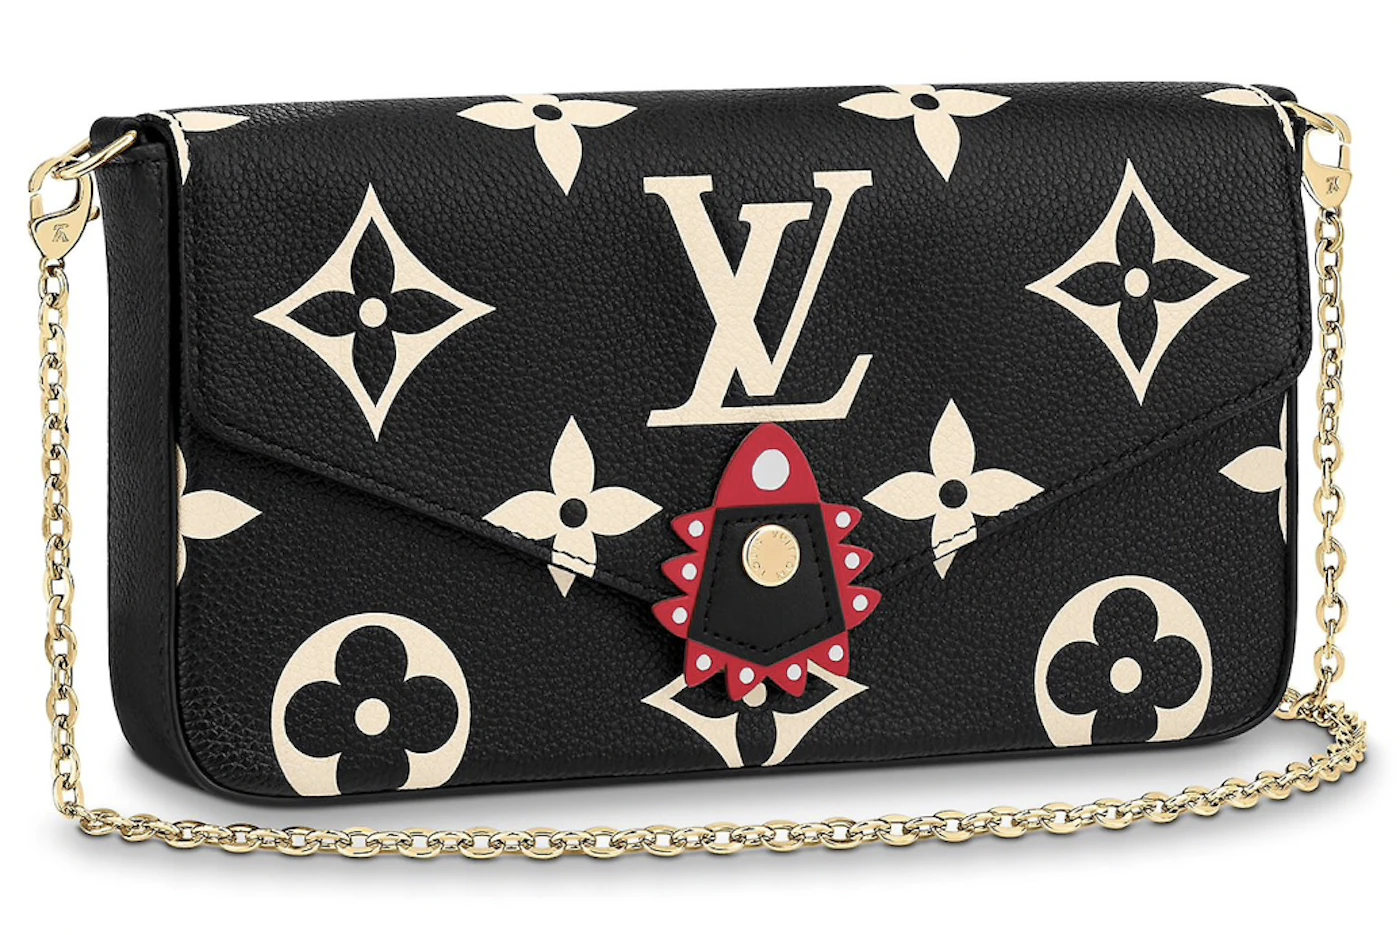 Louis Vuitton - Felicie Pochette Bag